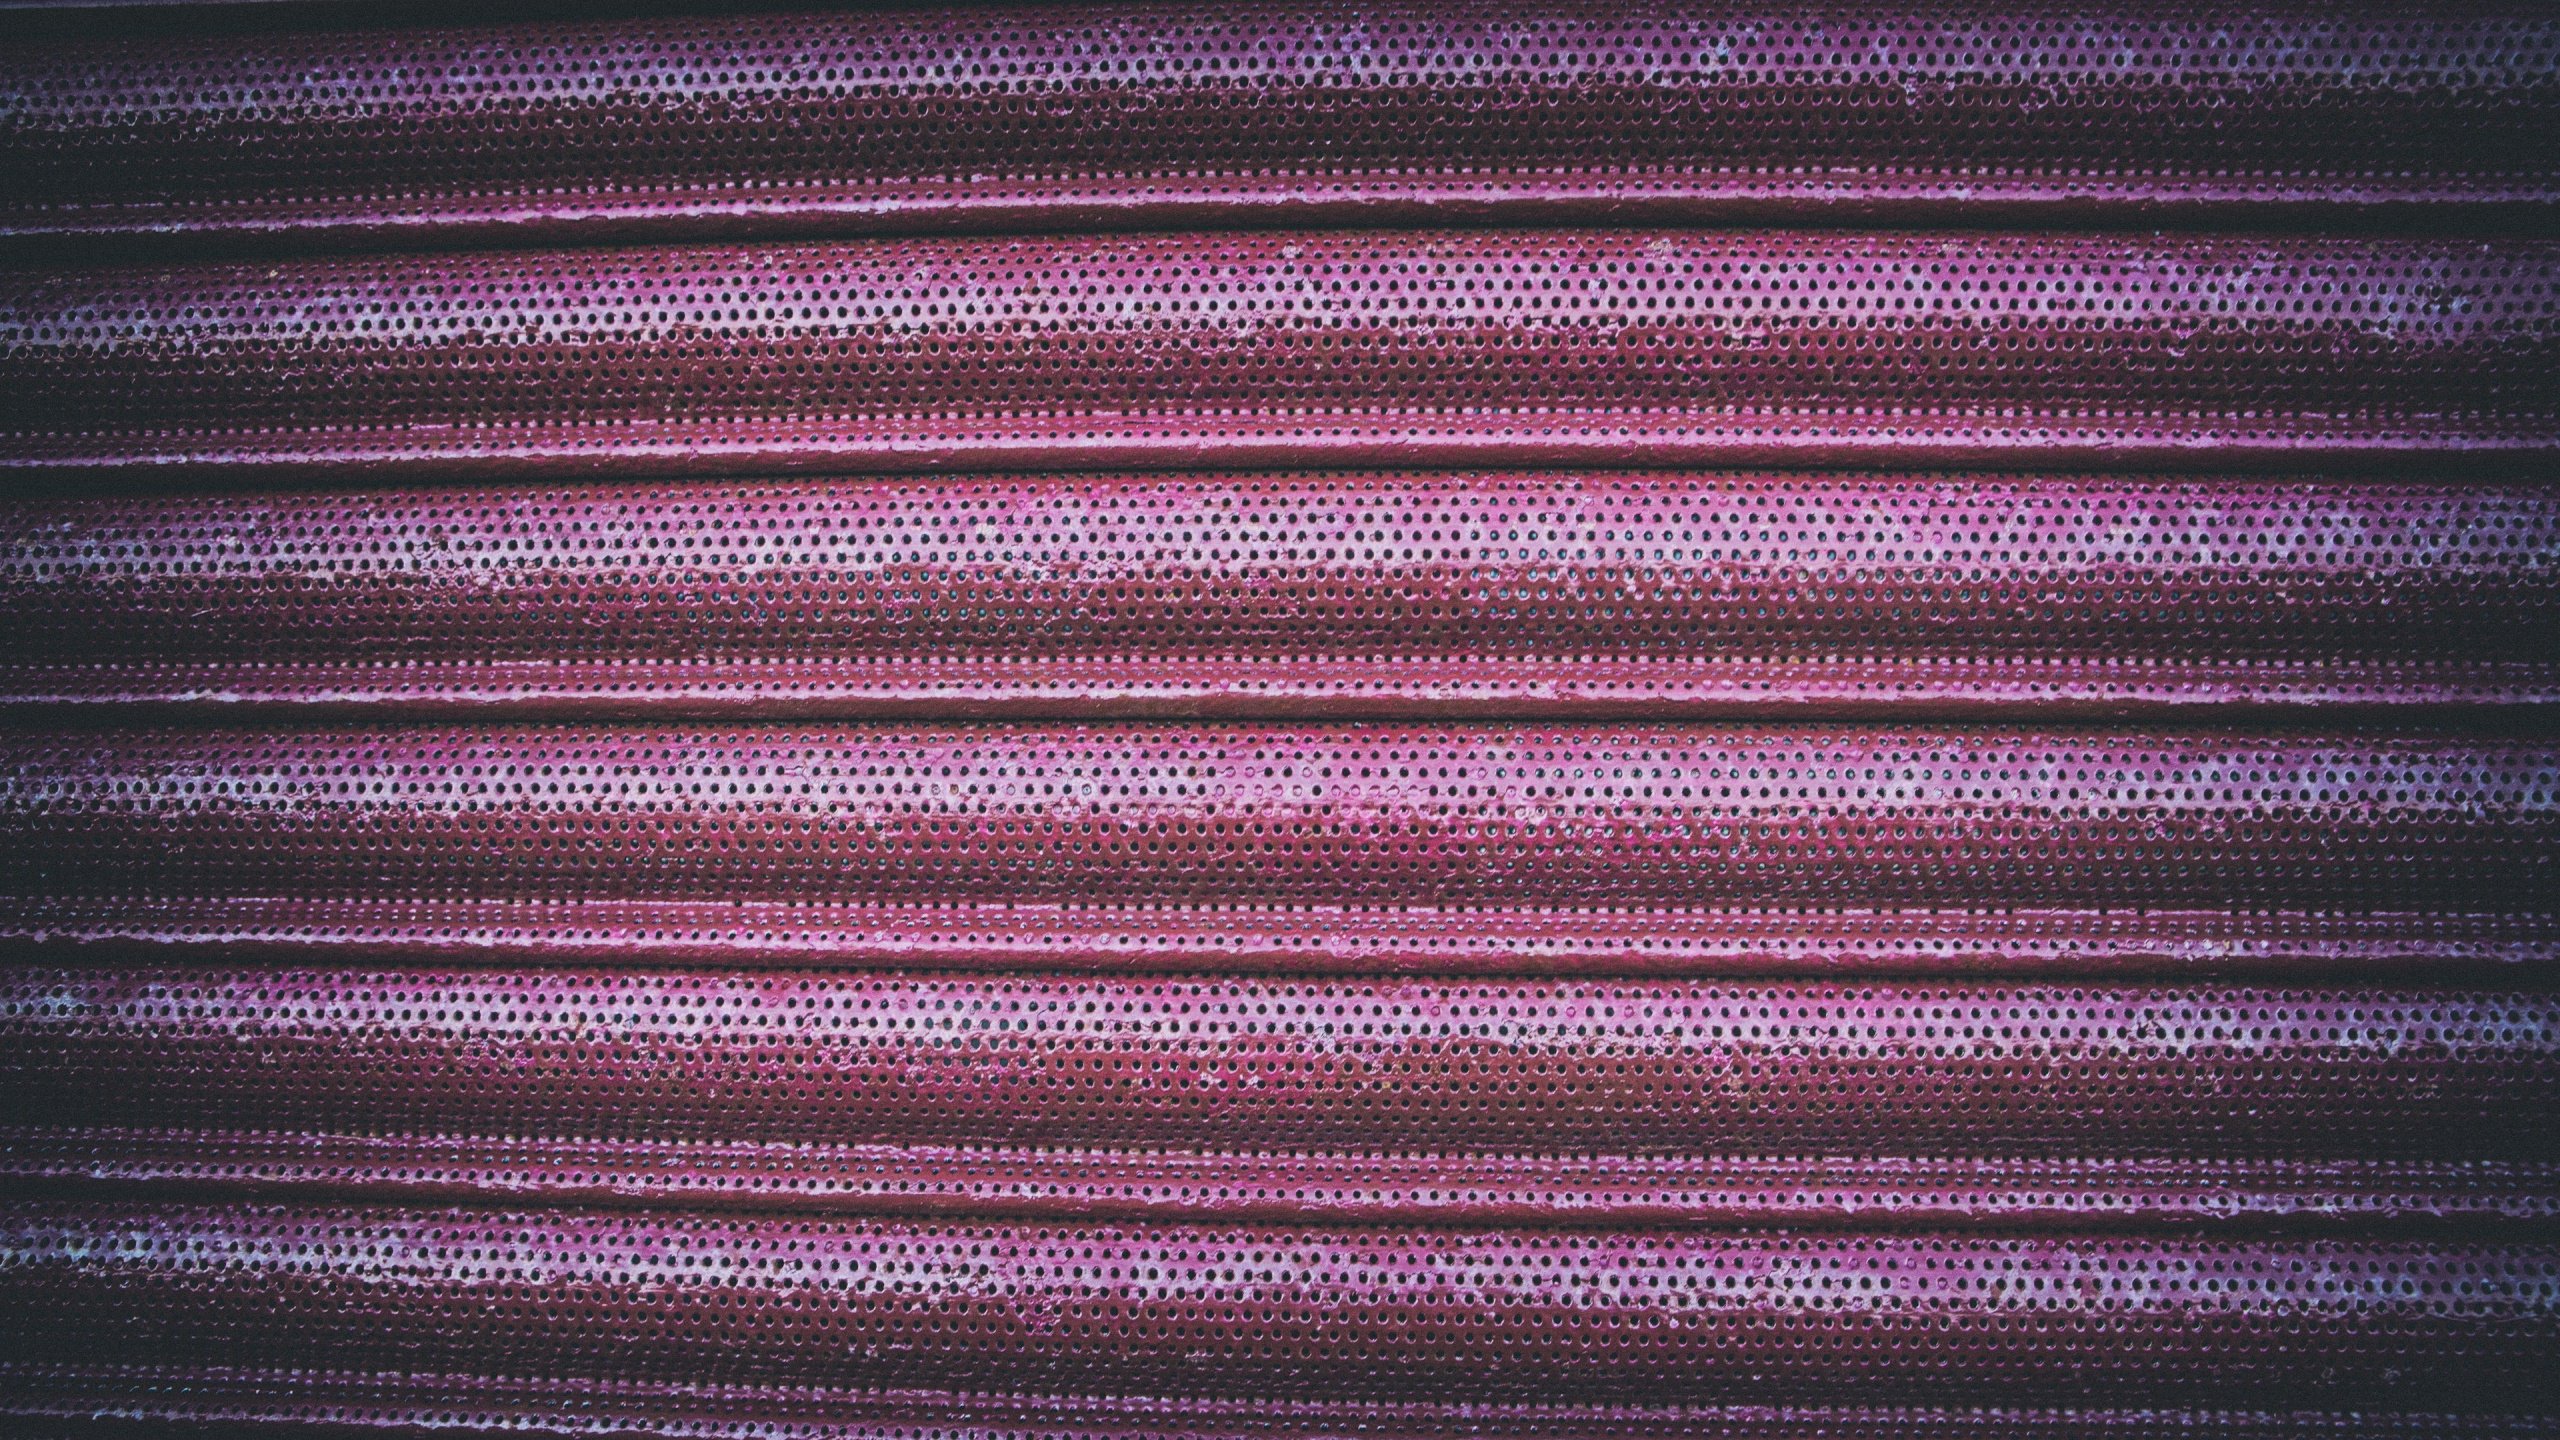 Textil de Rayas Moradas y Negras. Wallpaper in 2560x1440 Resolution